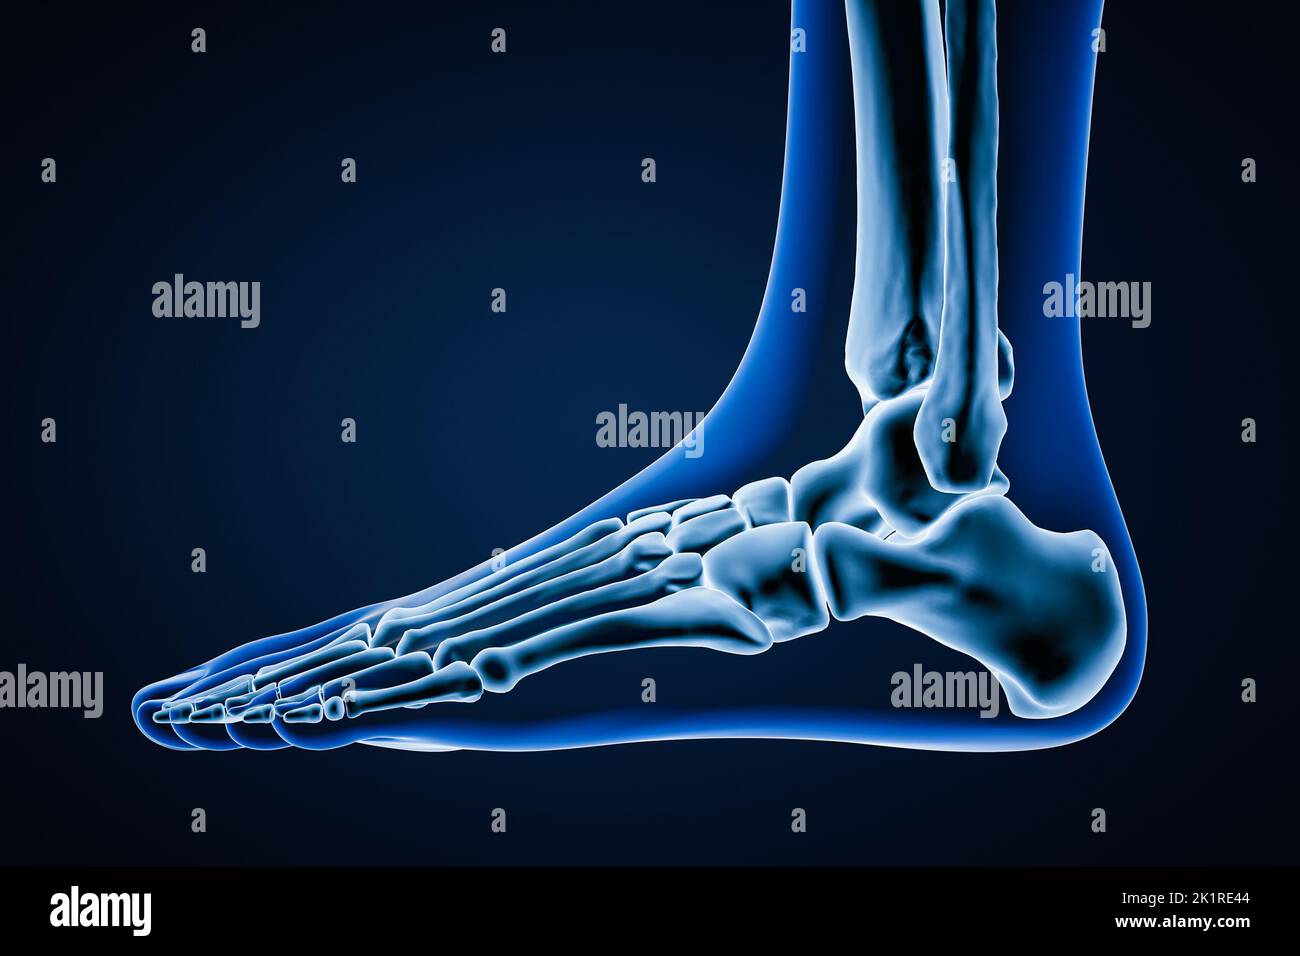 Vista lateral o de perfil de los huesos del pie izquierdo humanos precisos con contornos del cuerpo sobre fondo azul. Ilustración 3D. Anatomía, osteología, ortopedia Foto de stock